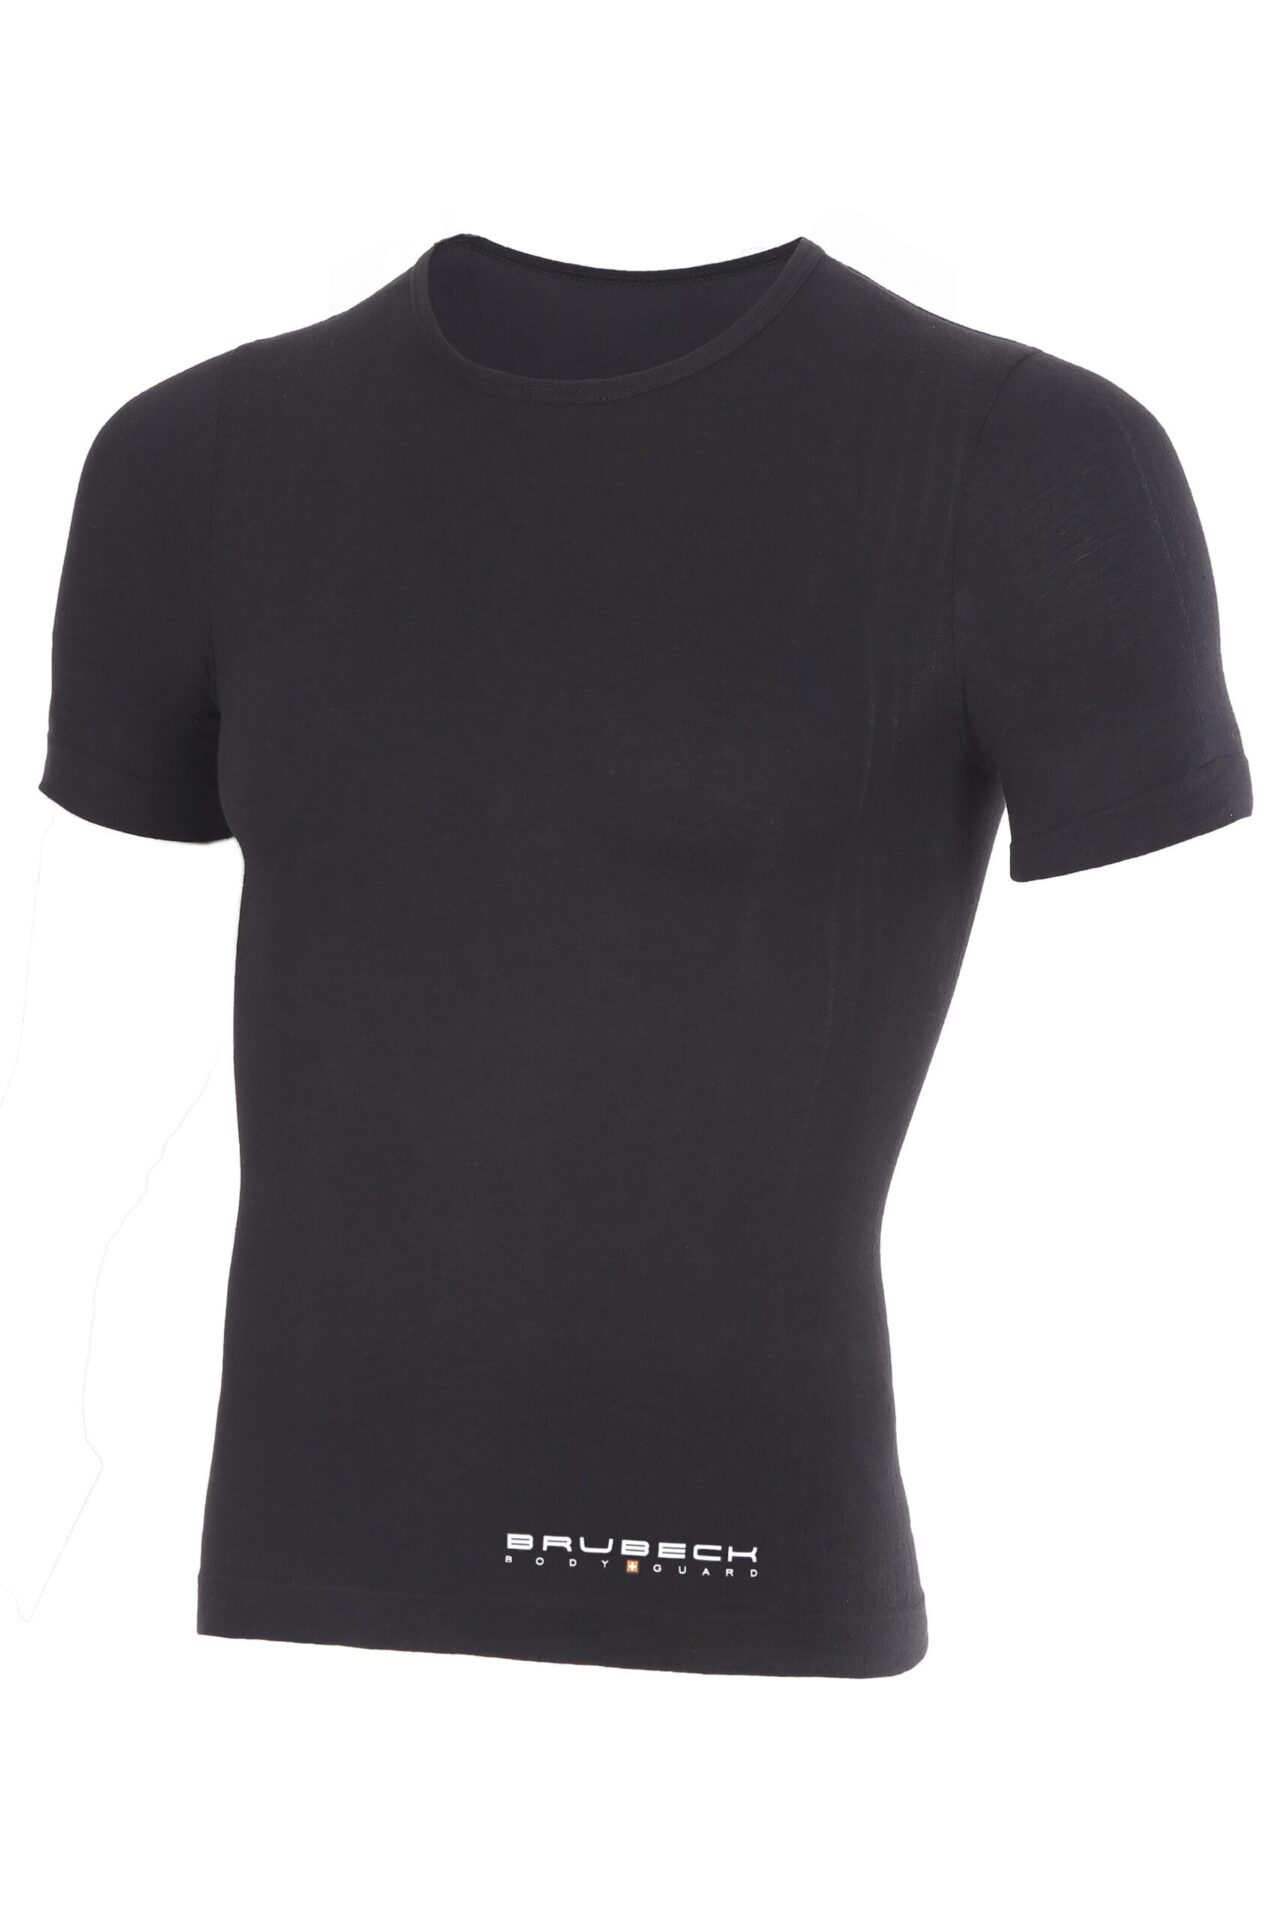 Koszulka termiczna T-shirt BRUBECK PROTECT bez napisu krótki rękaw